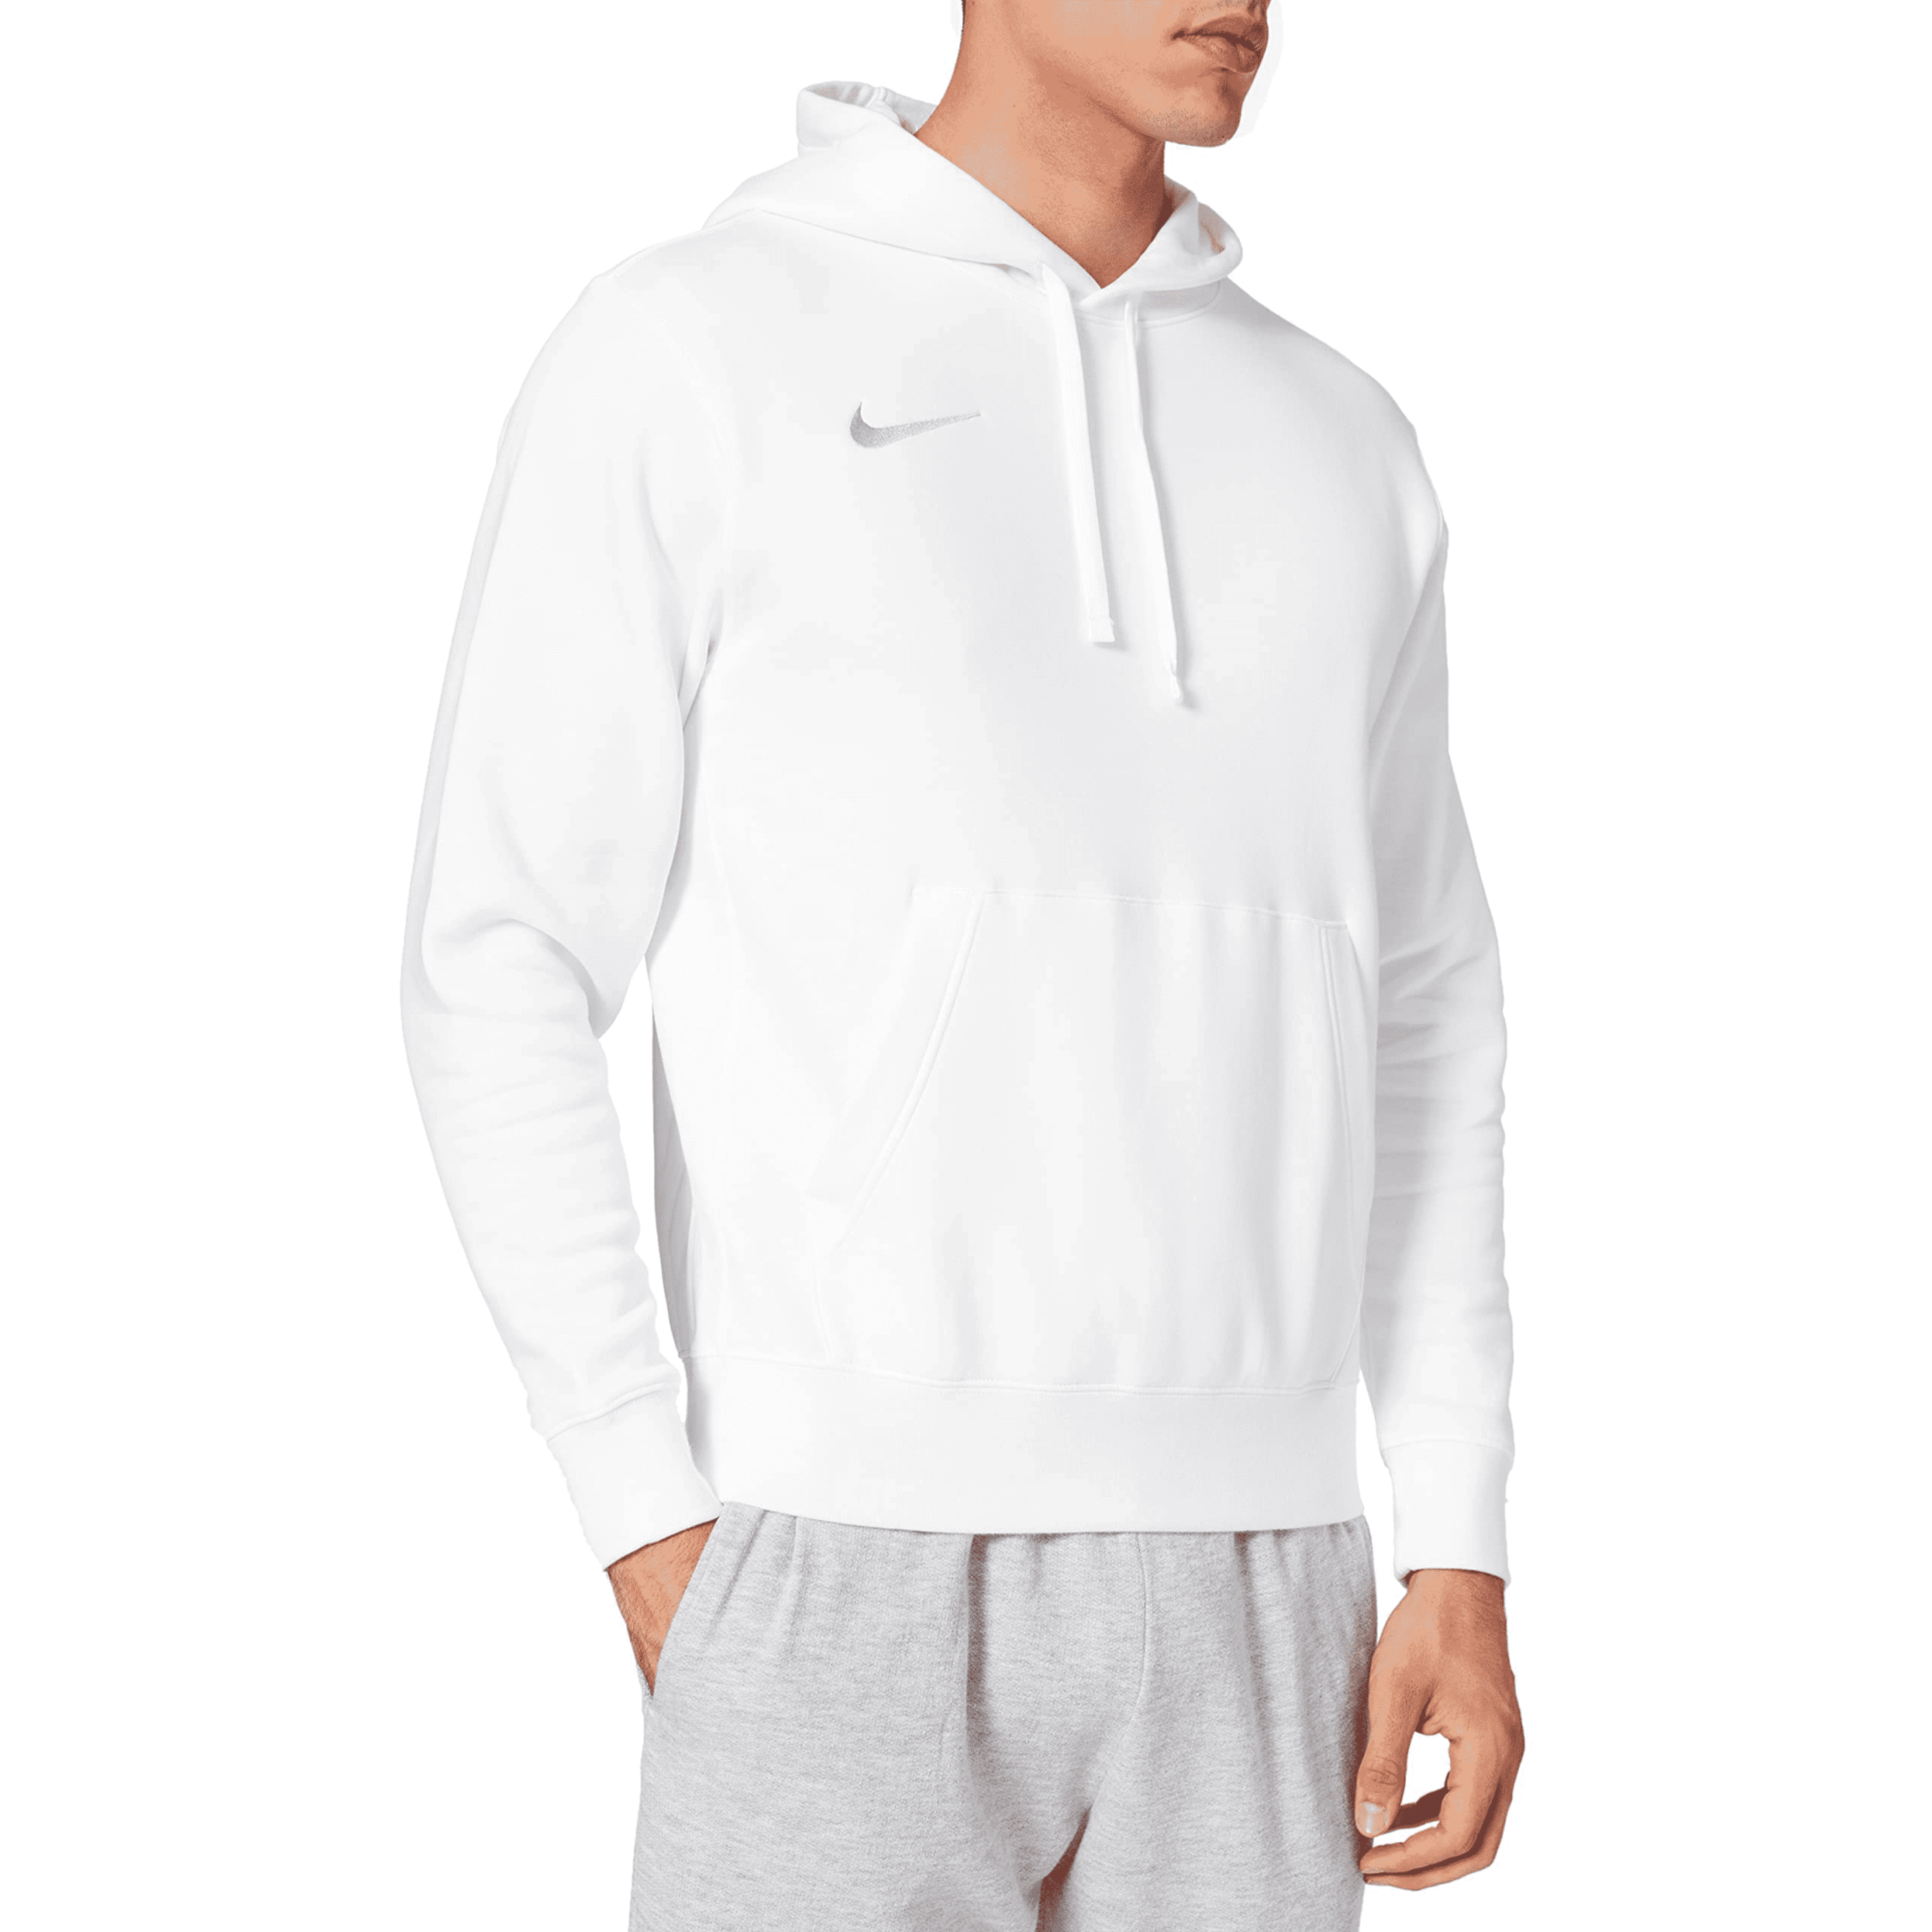 קפוצ'ון לגברים מידה L דגם Nike Team Club 20 - צבע לבן- יבואן מקביל